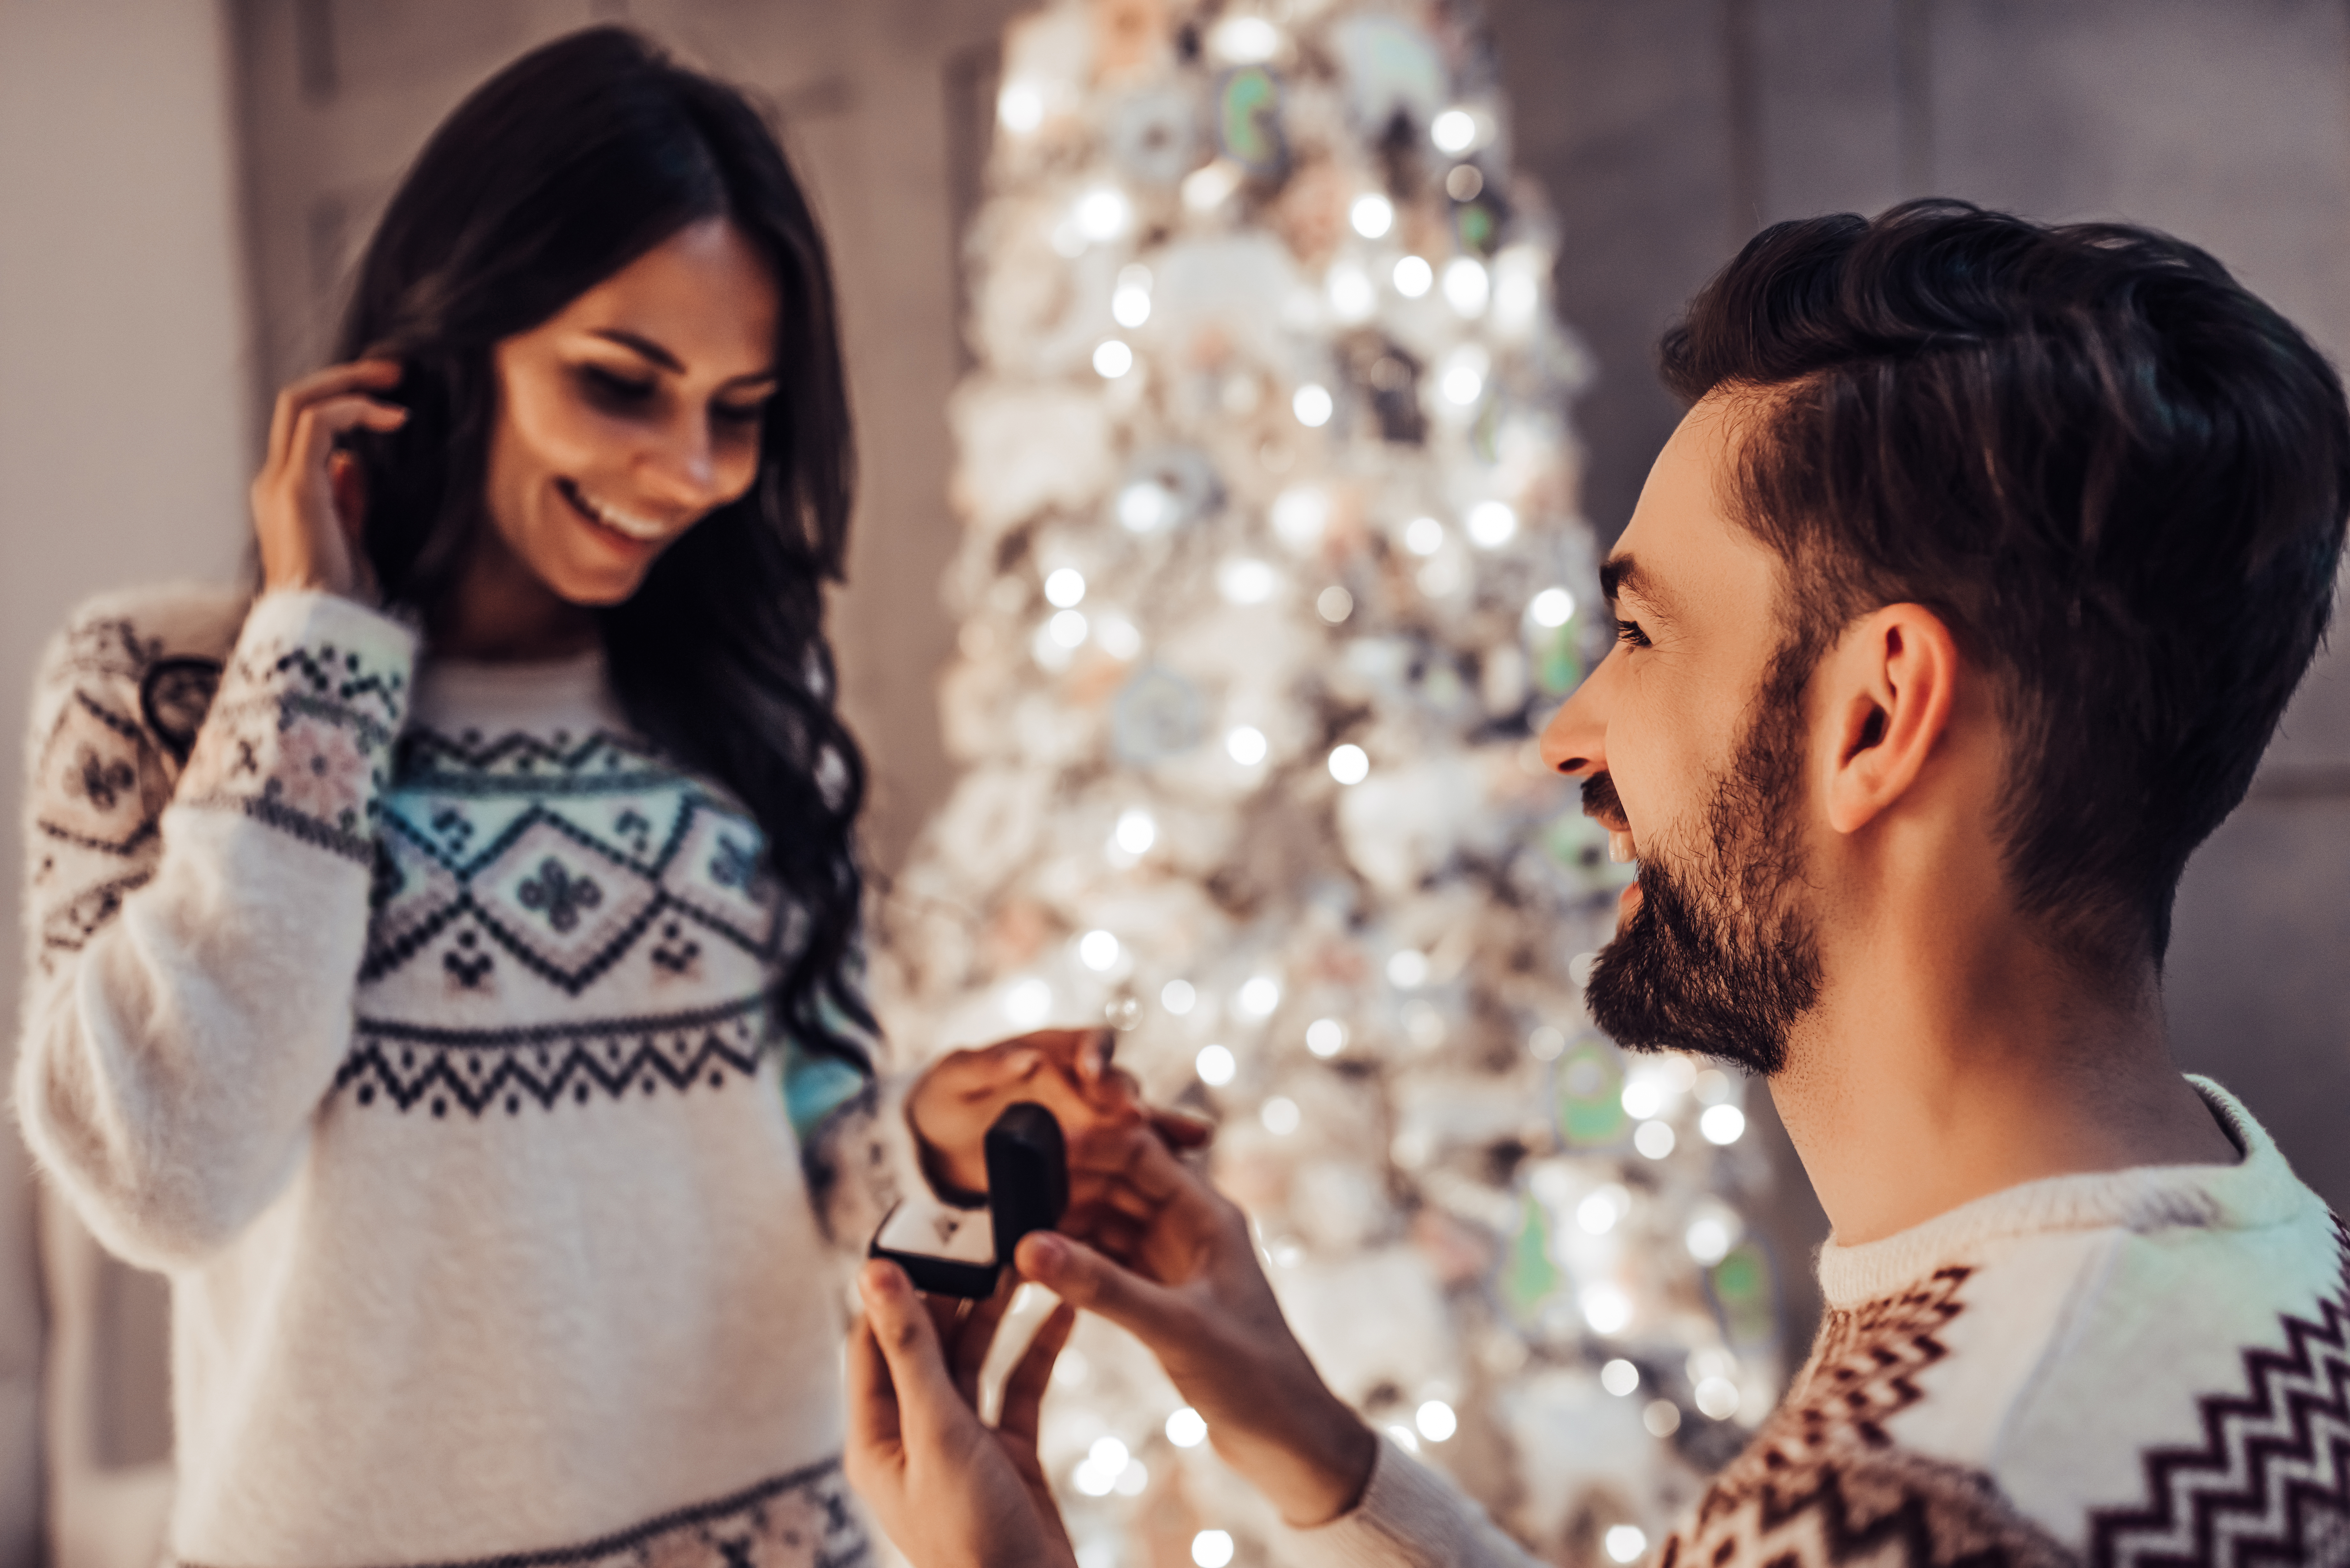 Un homme demande sa petite amie en mariage avec un arbre de Noël en arrière-plan | Source : Shutterstock